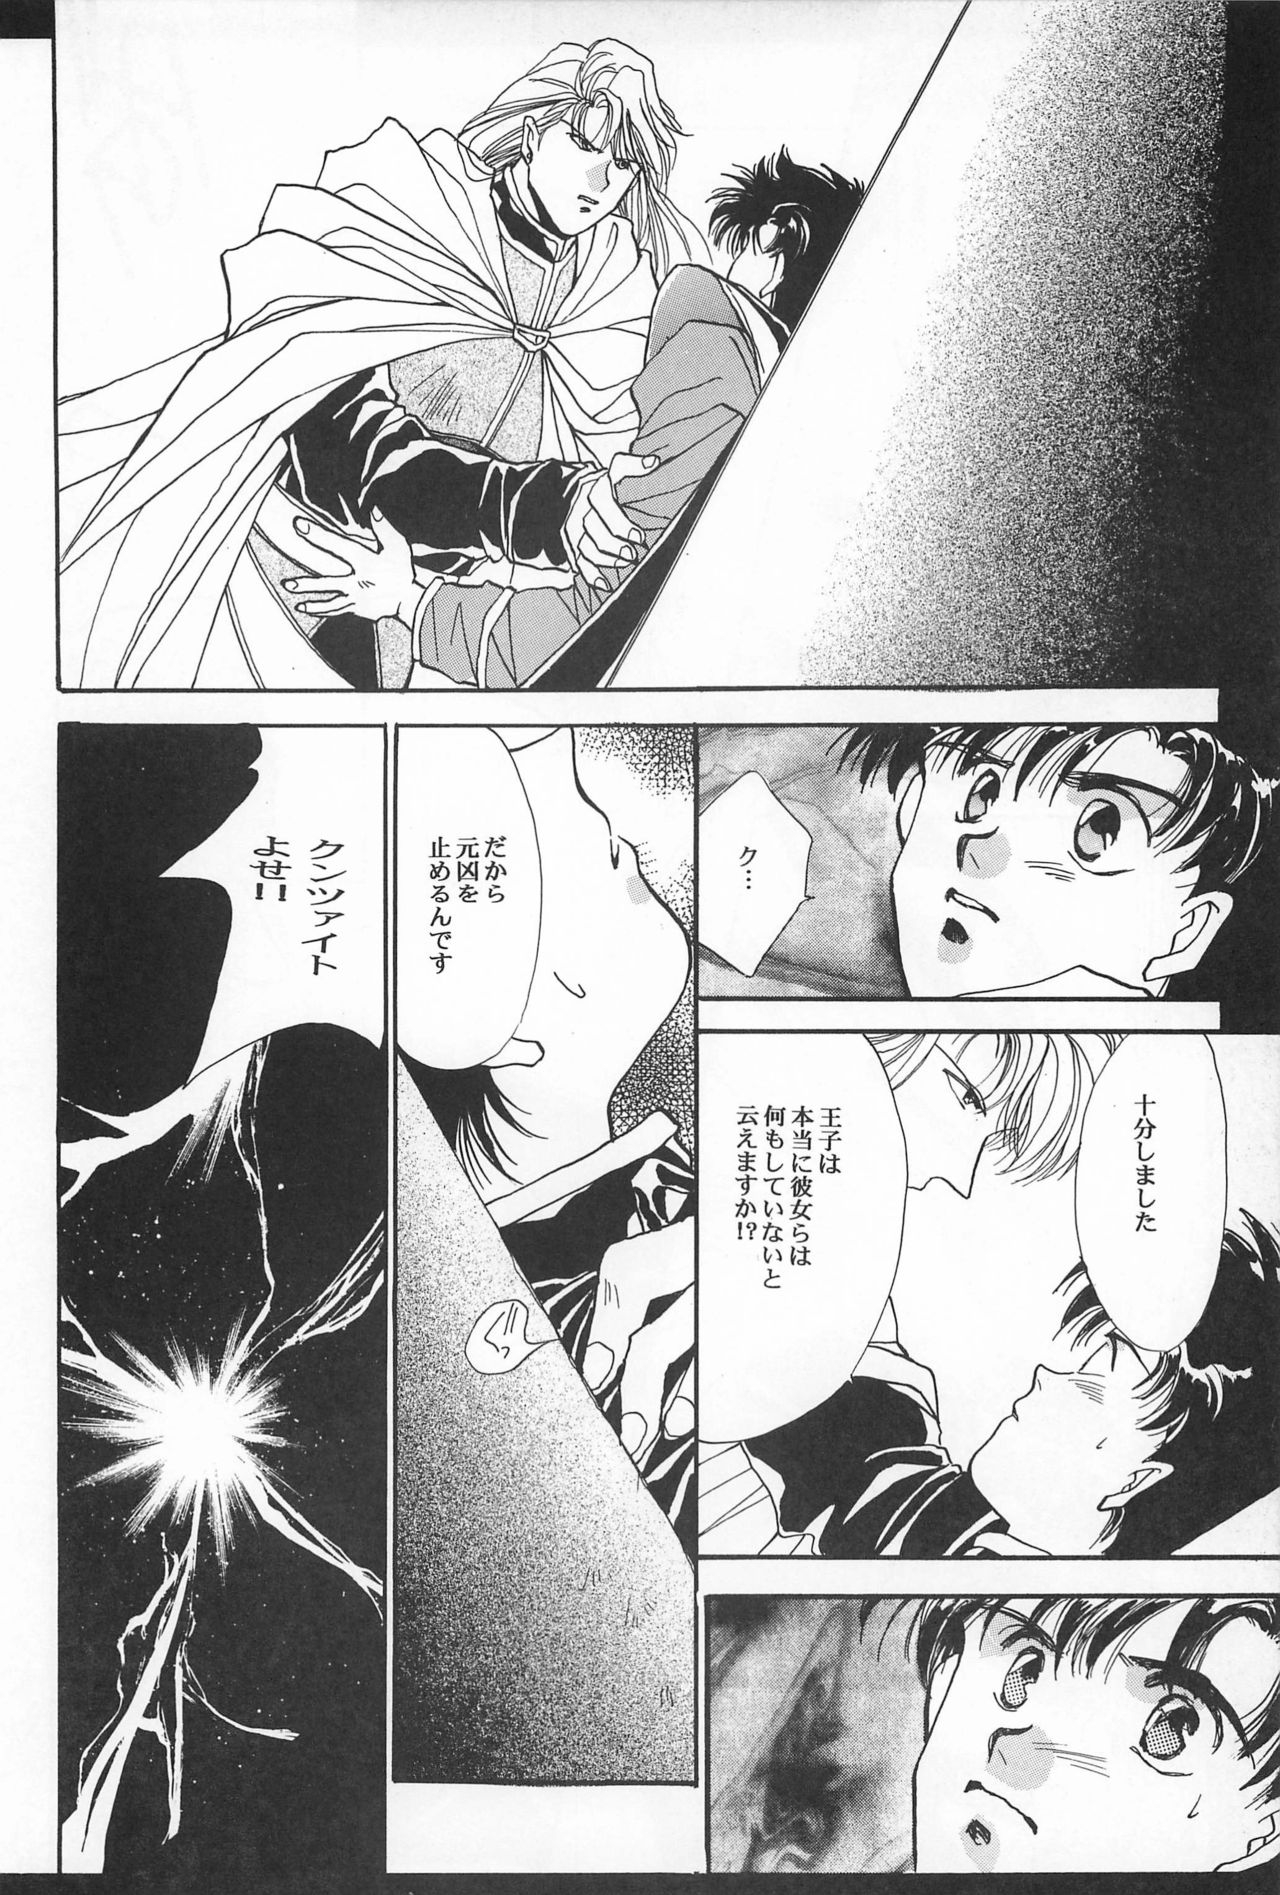 [Hello World (Muttri Moony)] Kaze no You ni Yume no You ni - Sailor Moon Collection (Sailor Moon) 55